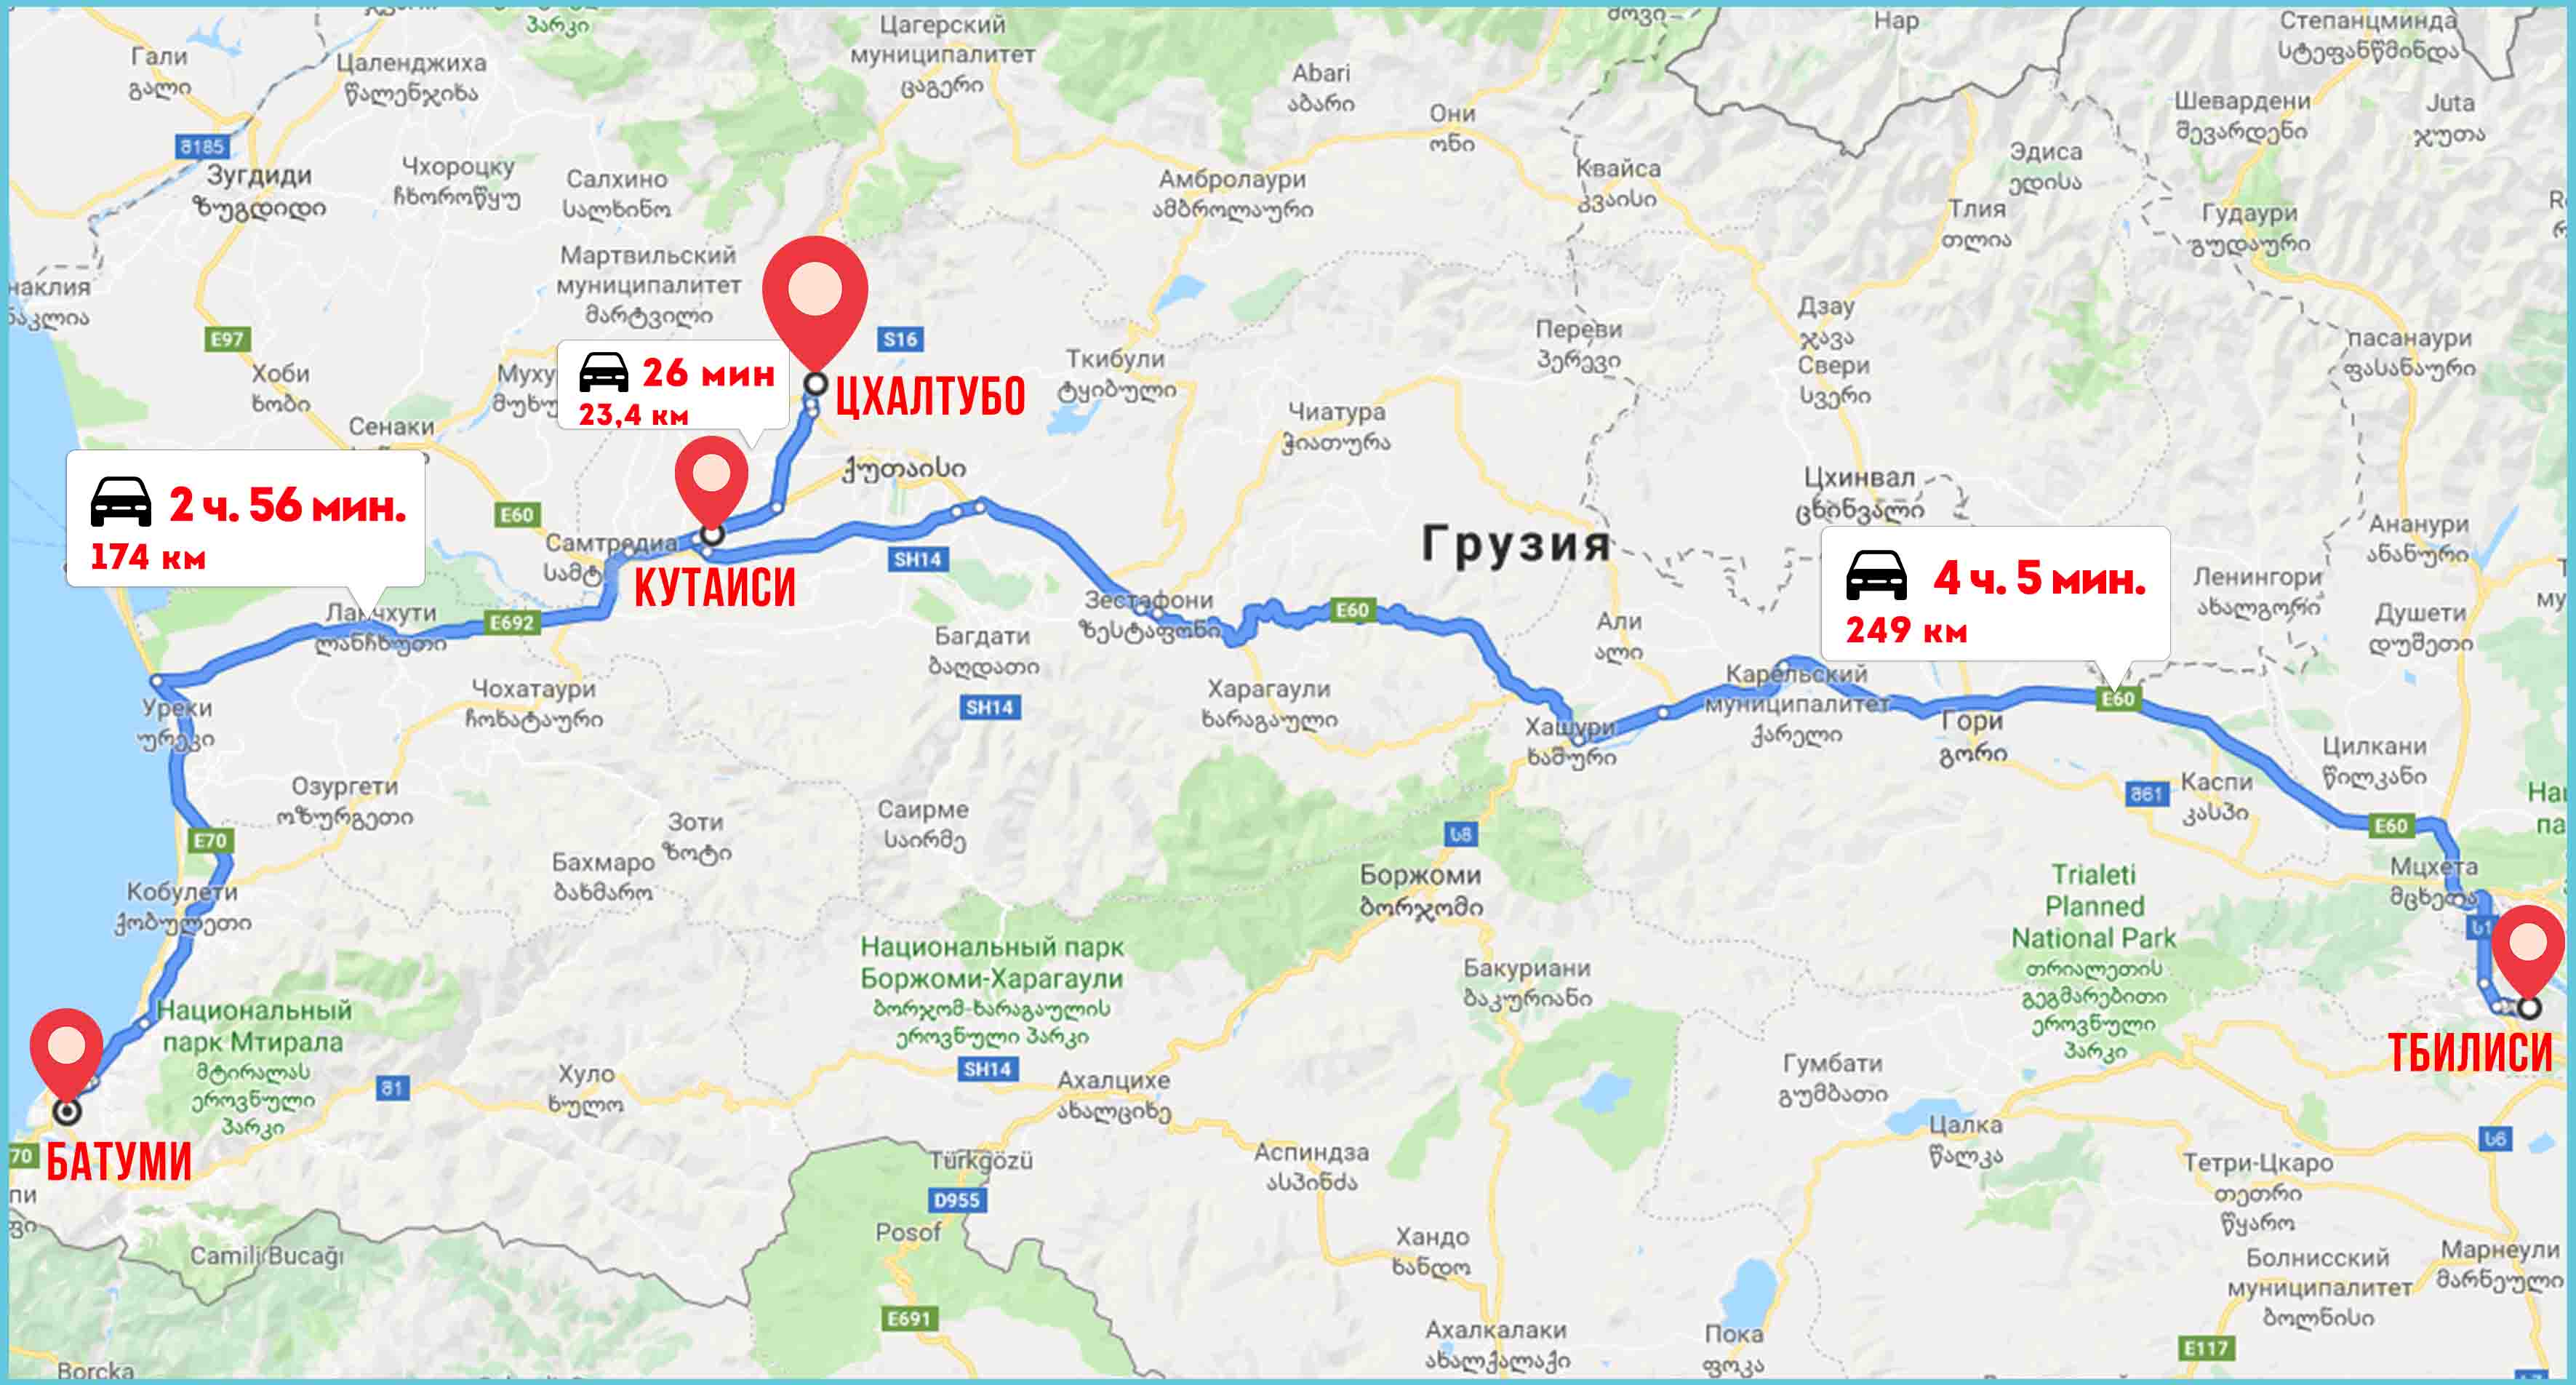 Как добраться до Цхалтубо из Тбилиси, Кутаиси, Батуми и Москвы